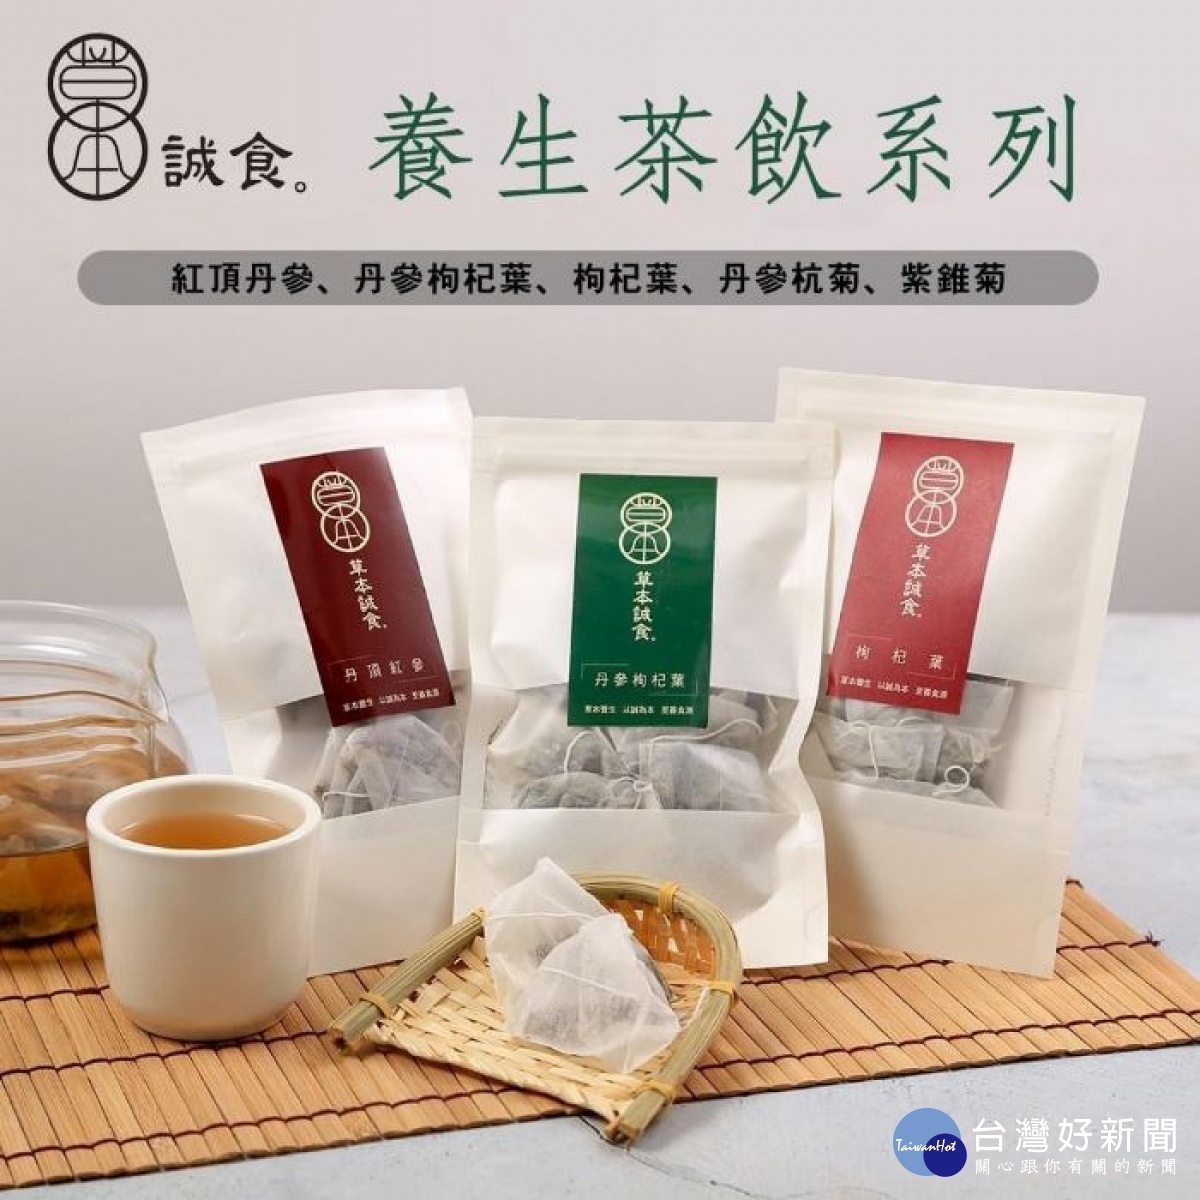 葉芷妘表示，其販售產品為草本誠食丹參茶包跟丹參滴雞精，並無製作及販賣有機丹參粉產品。